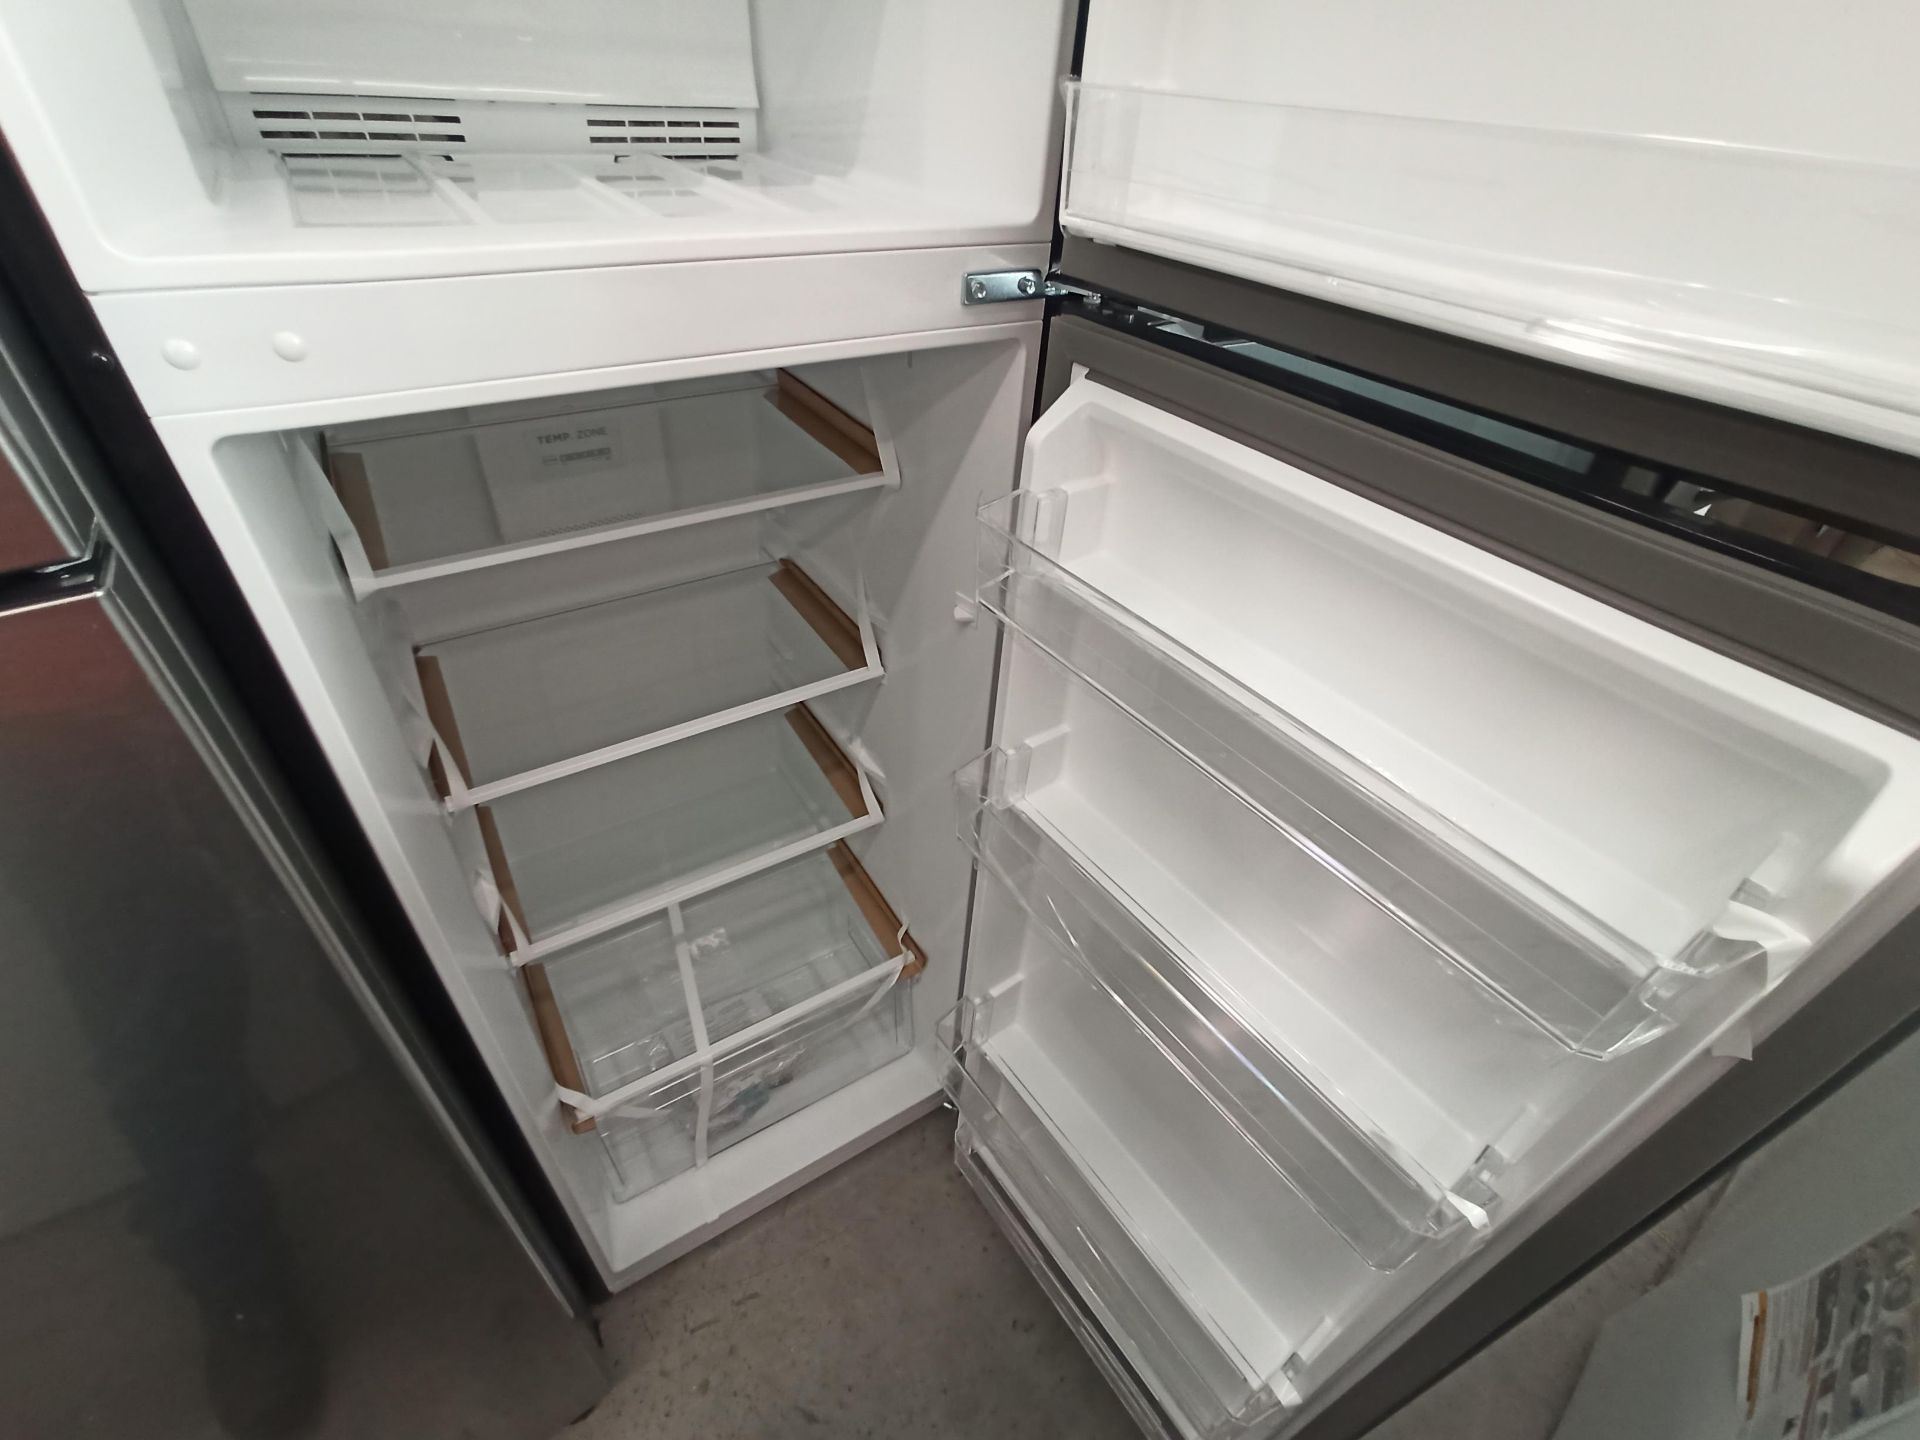 Lote de 2 refrigeradores contiene: 1 Refrigerador Marca ATVIO, Modelo AT-94PMS, Serie N/D, Color GR - Image 17 of 18